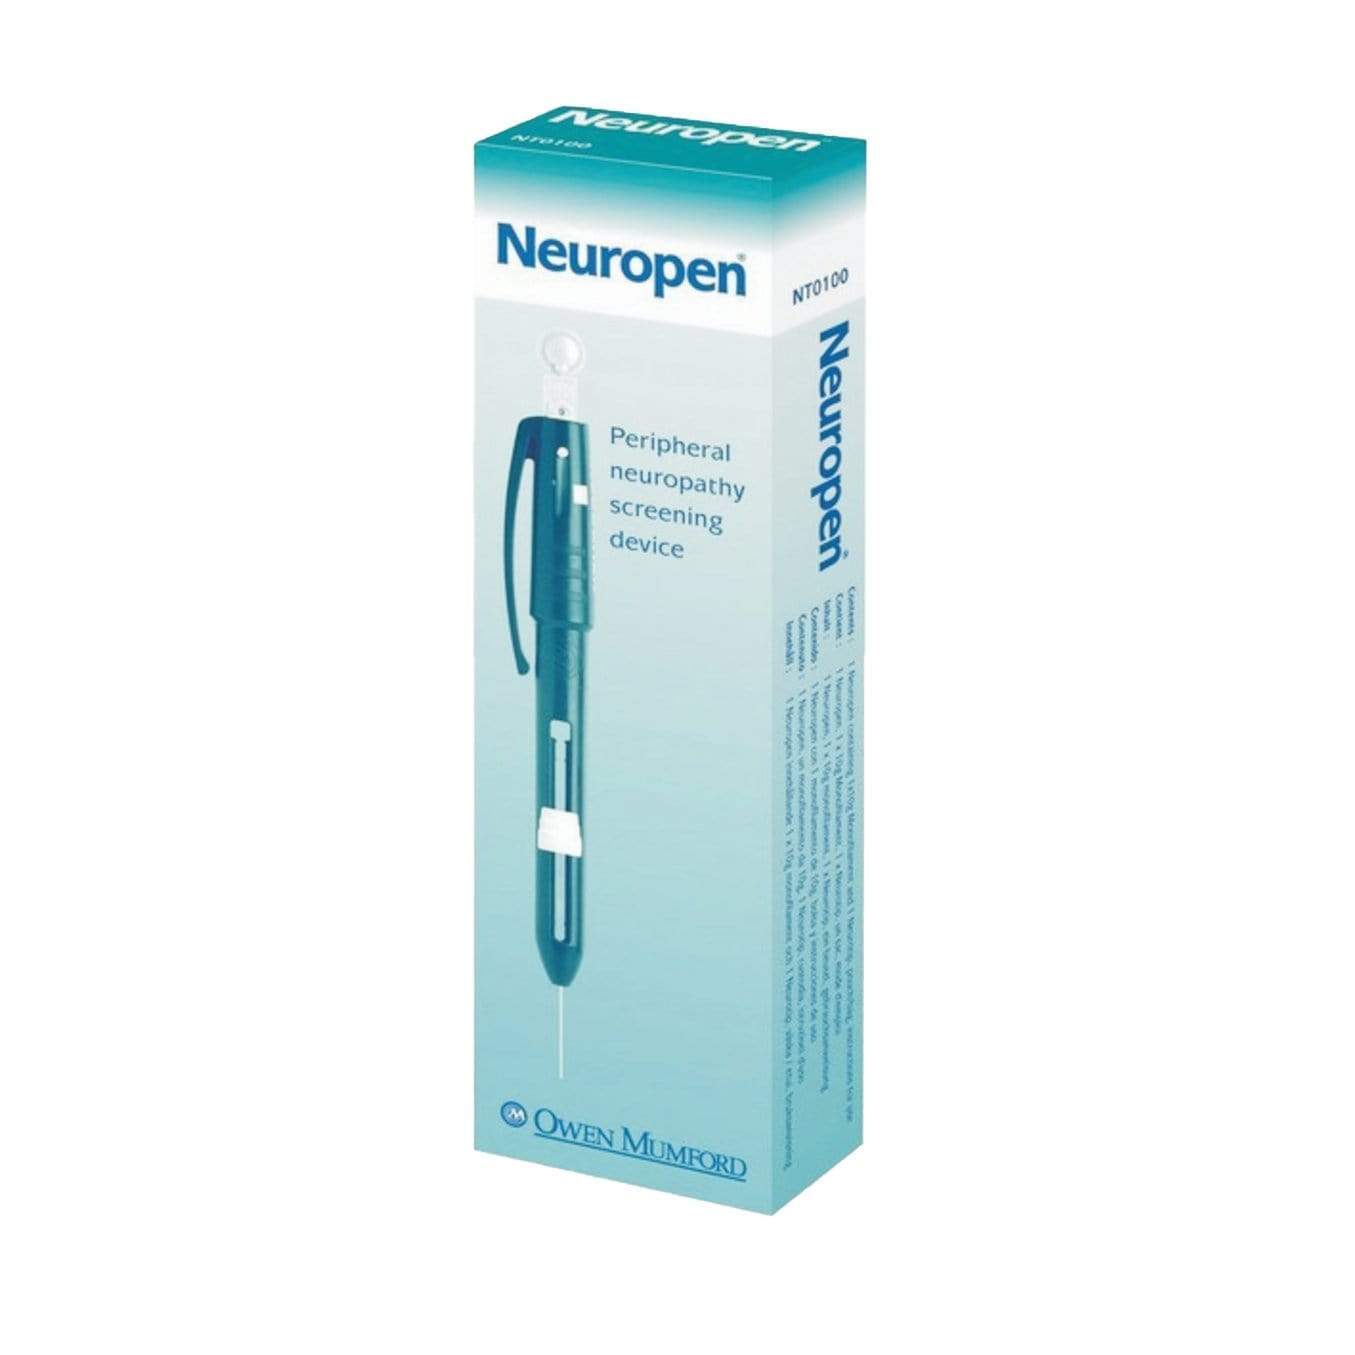 Neuropen Neurological Testing Pen